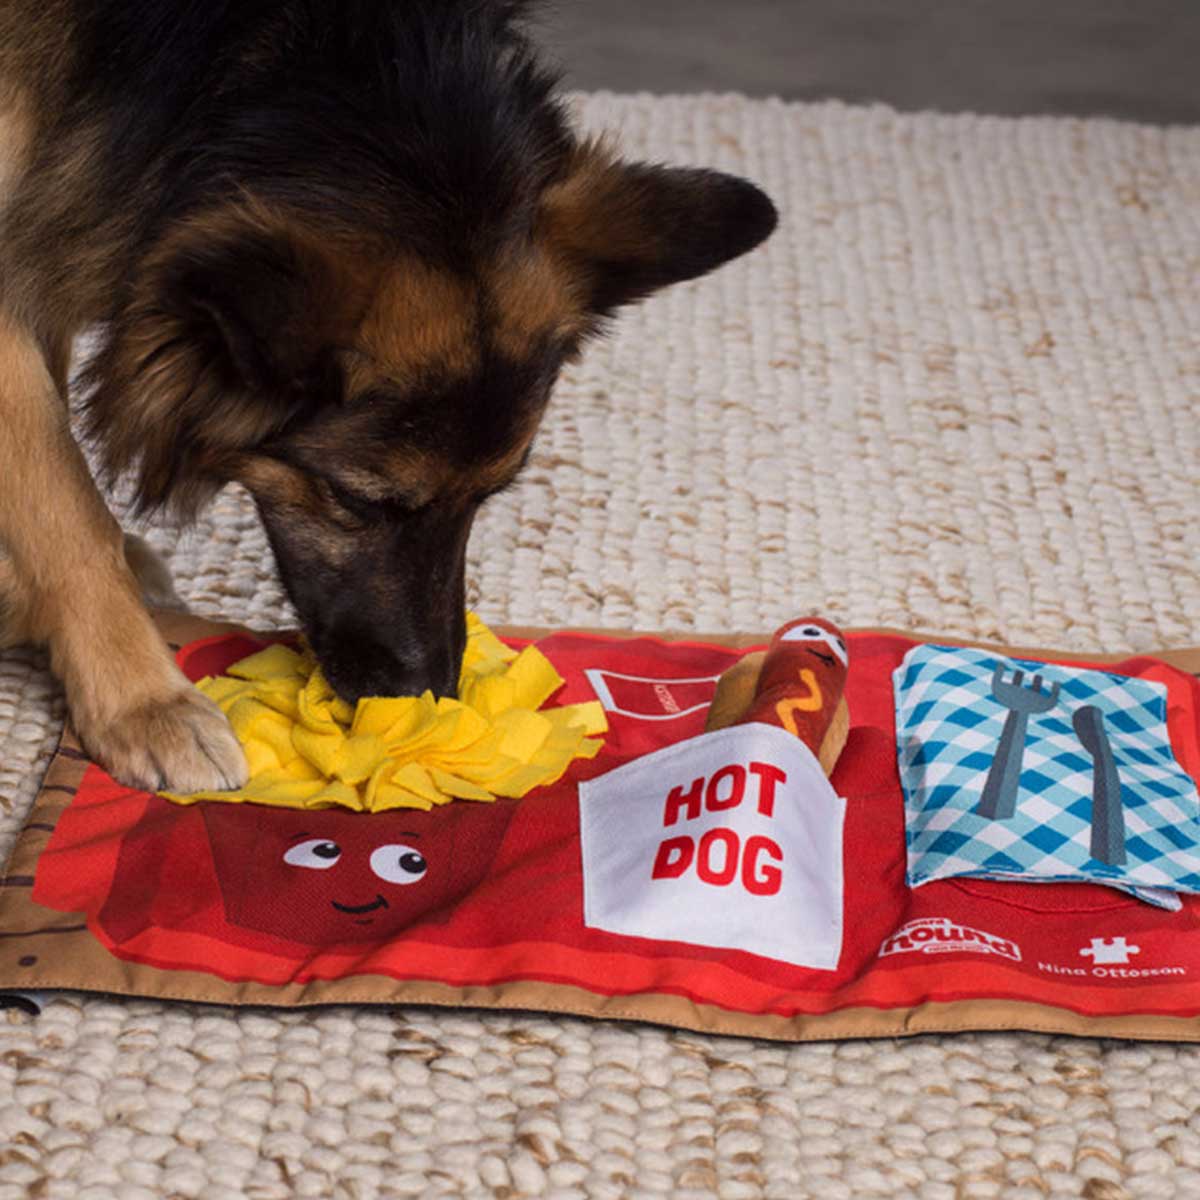 Nina Ottosson Puzzle Dog Toy - Treat Tumble - Large - Red